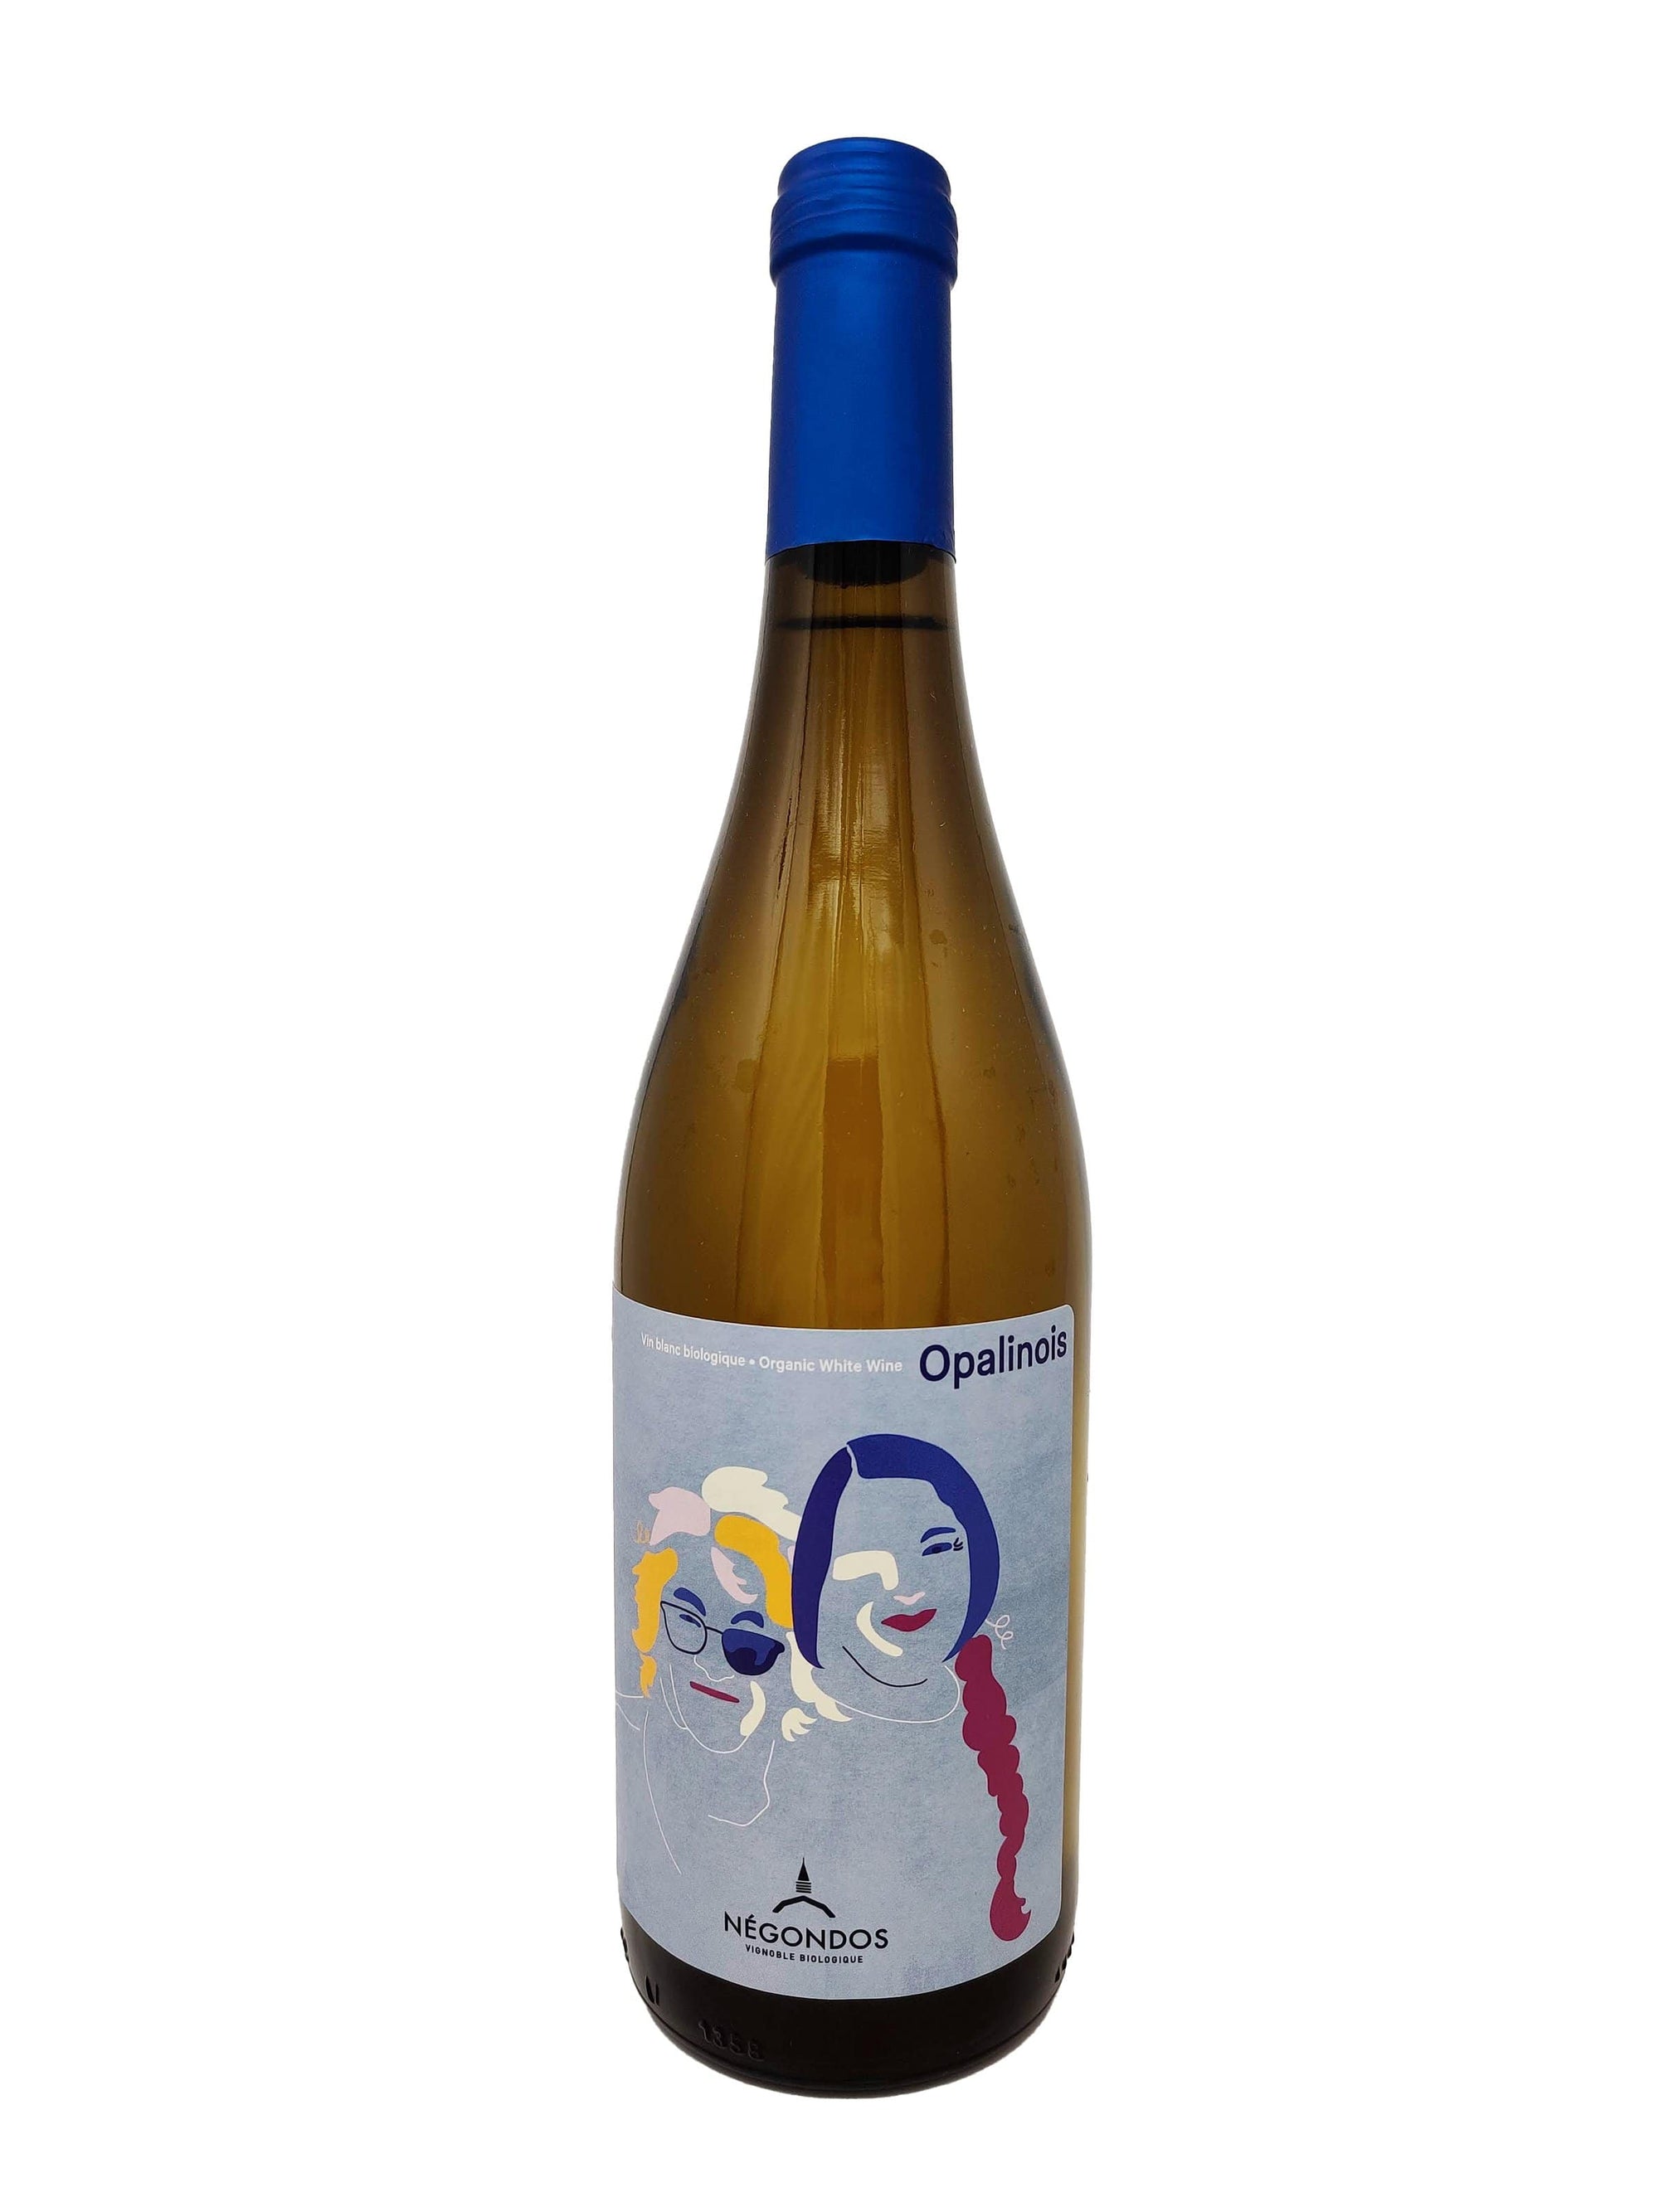 Vignoble Biologique Négondos Opalinois - Vin Blanc du vignoble biologique Négondos